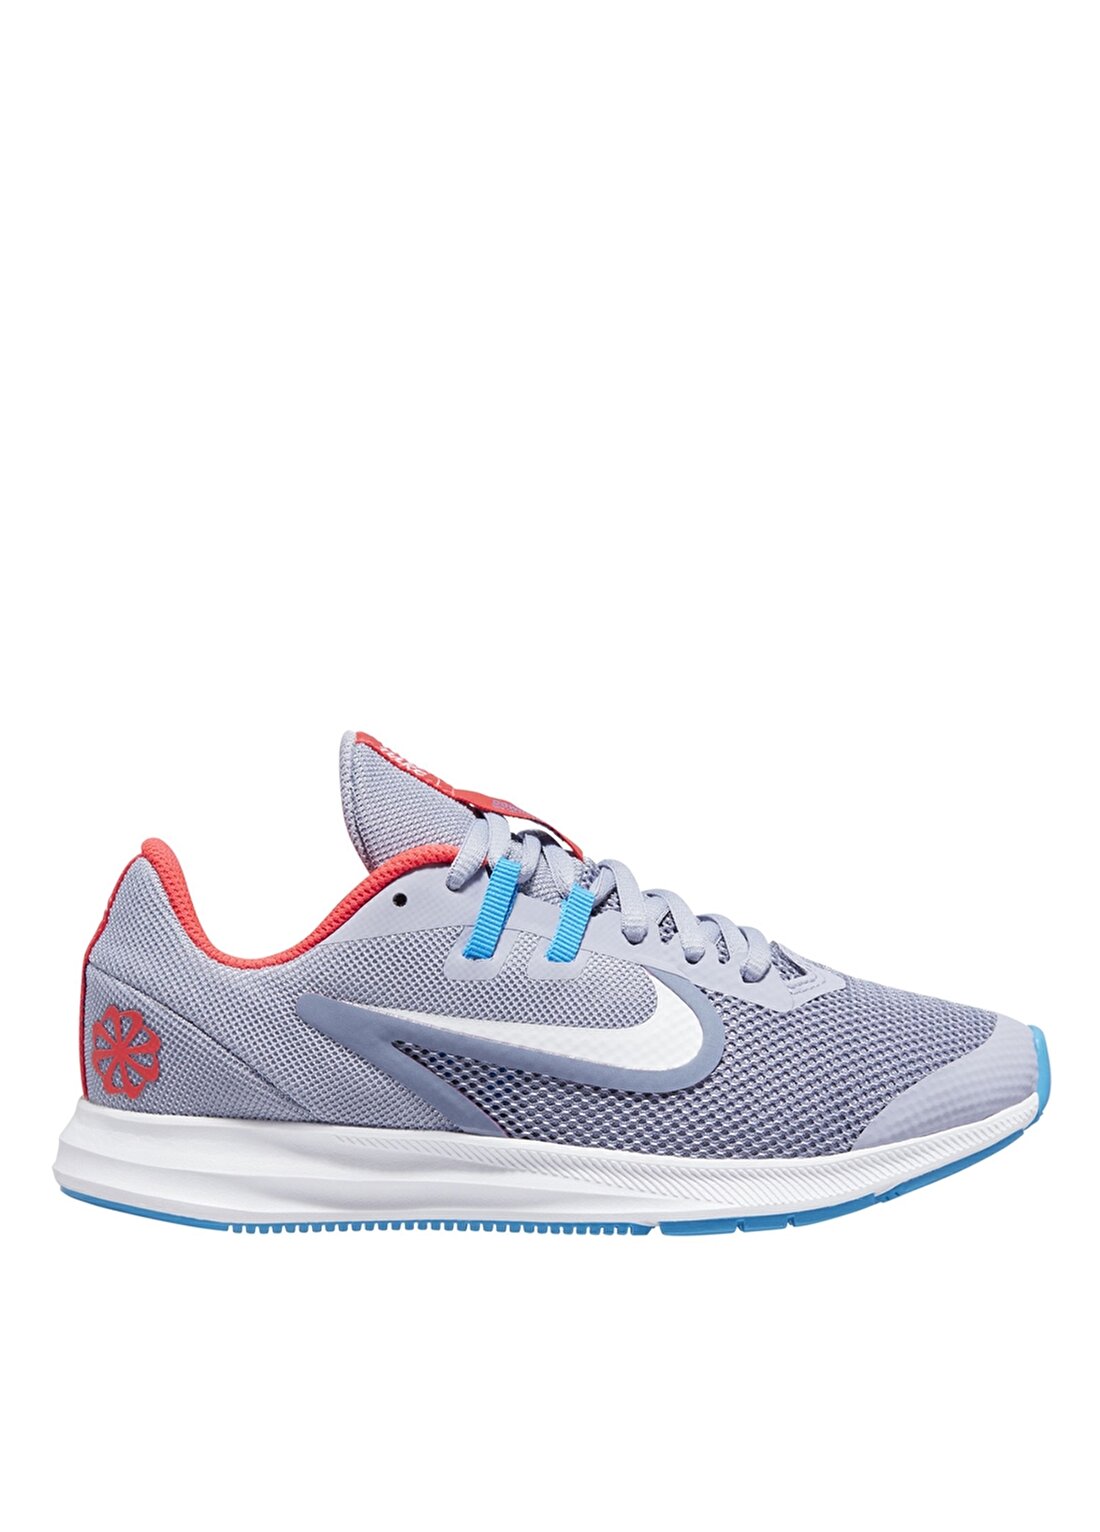 Nike Downshifter 9 JDI Çocuk Yürüyüş Ayakkabısı